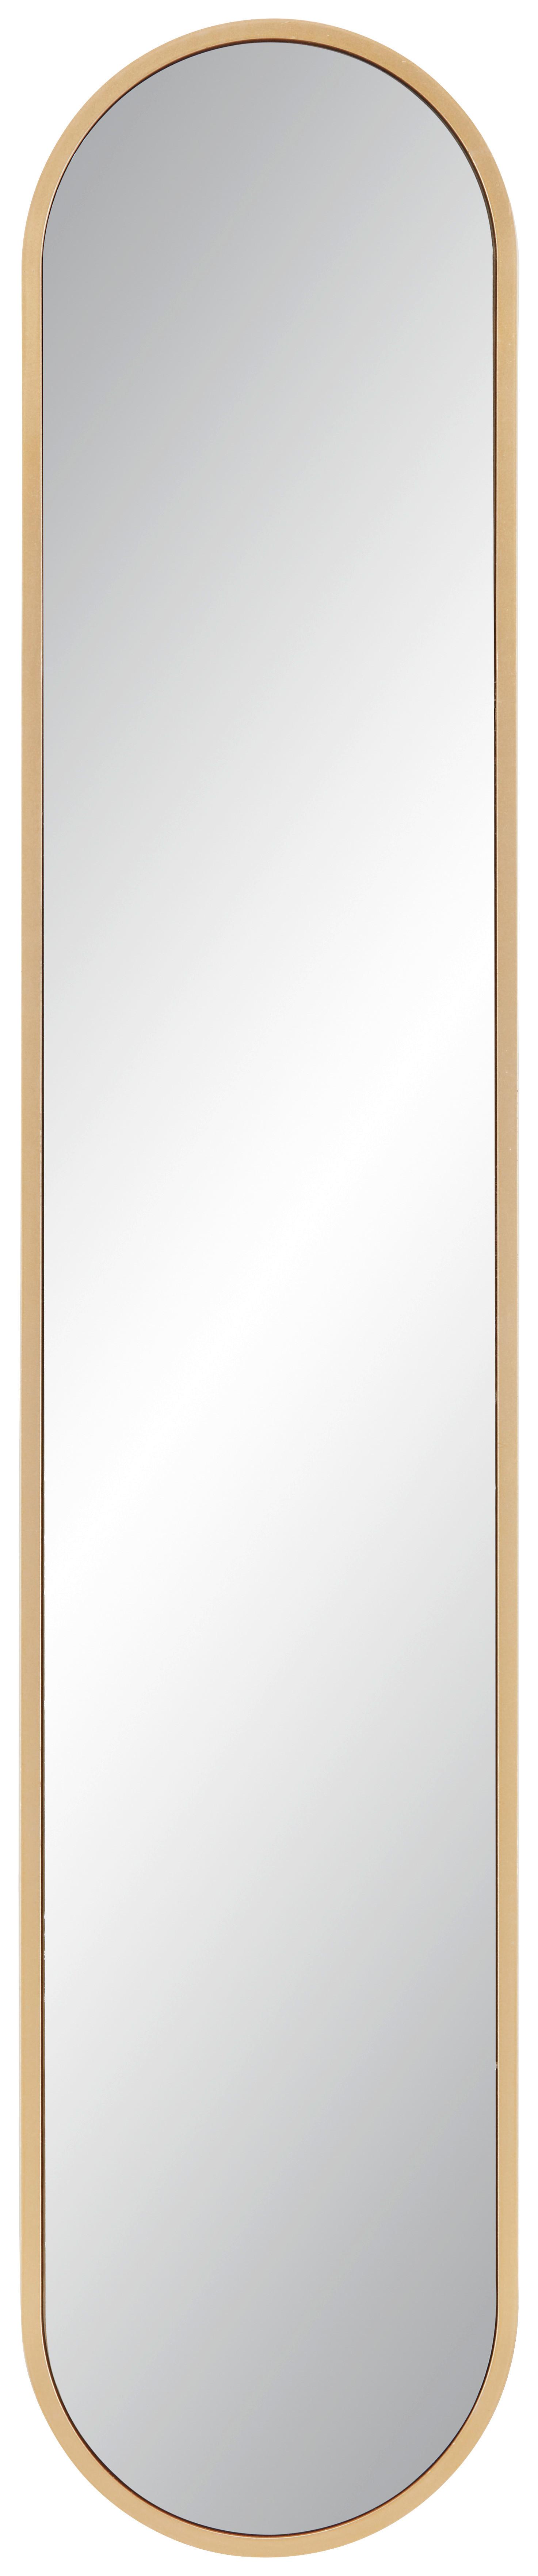 Schwarzer Spiegel, 20 x 15 cm Sonderangebote